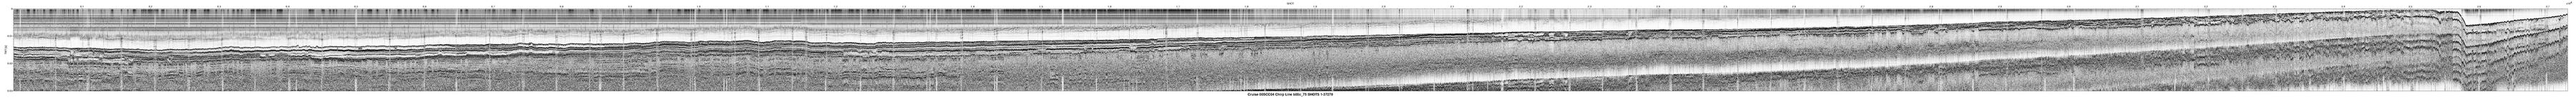 00SCC04 b00c_75 seismic profile image